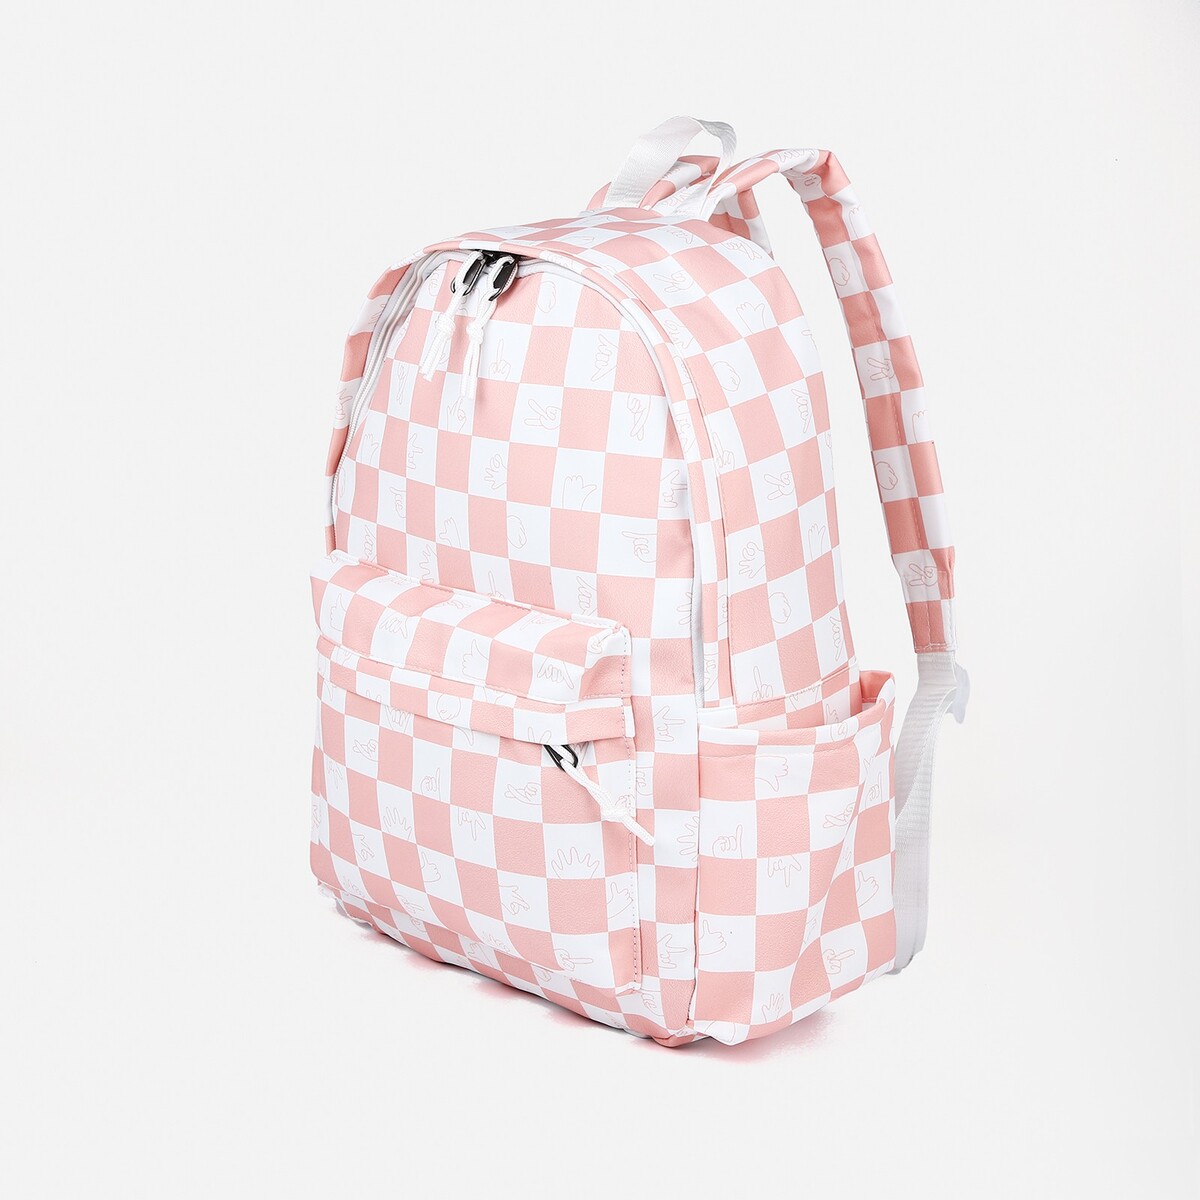 Рюкзак молодежный из текстиля, 4 кармана, цвет белый/розовый рюкзак молодежный из текстиля на молнии 2 кармана малиновый